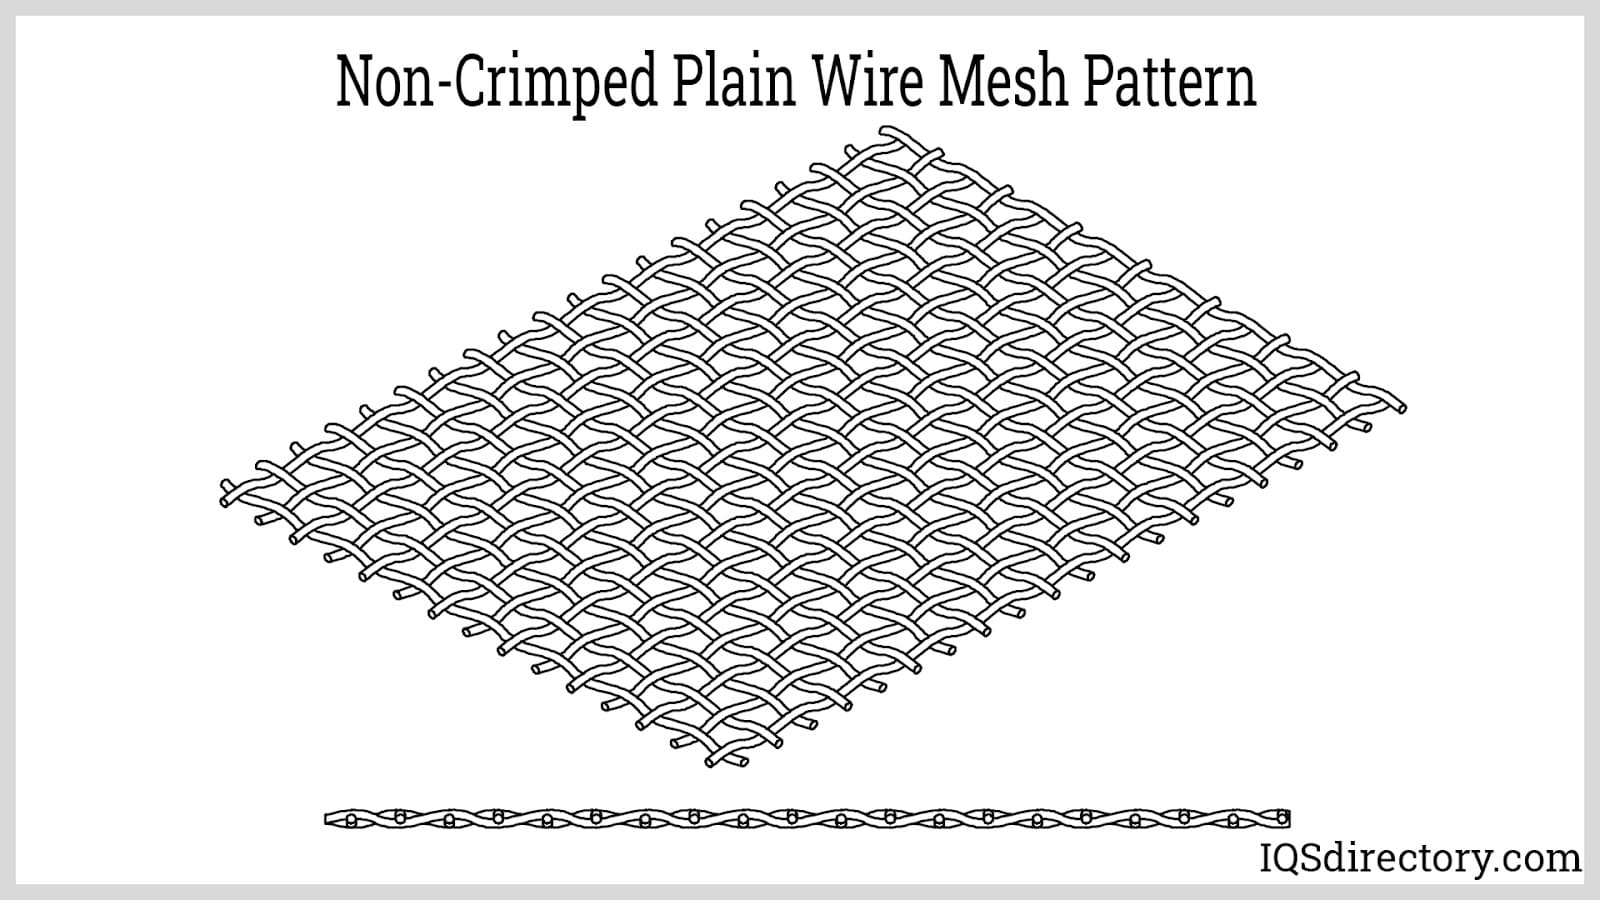 Non-Crimped Plain Wire Mesh Pattern